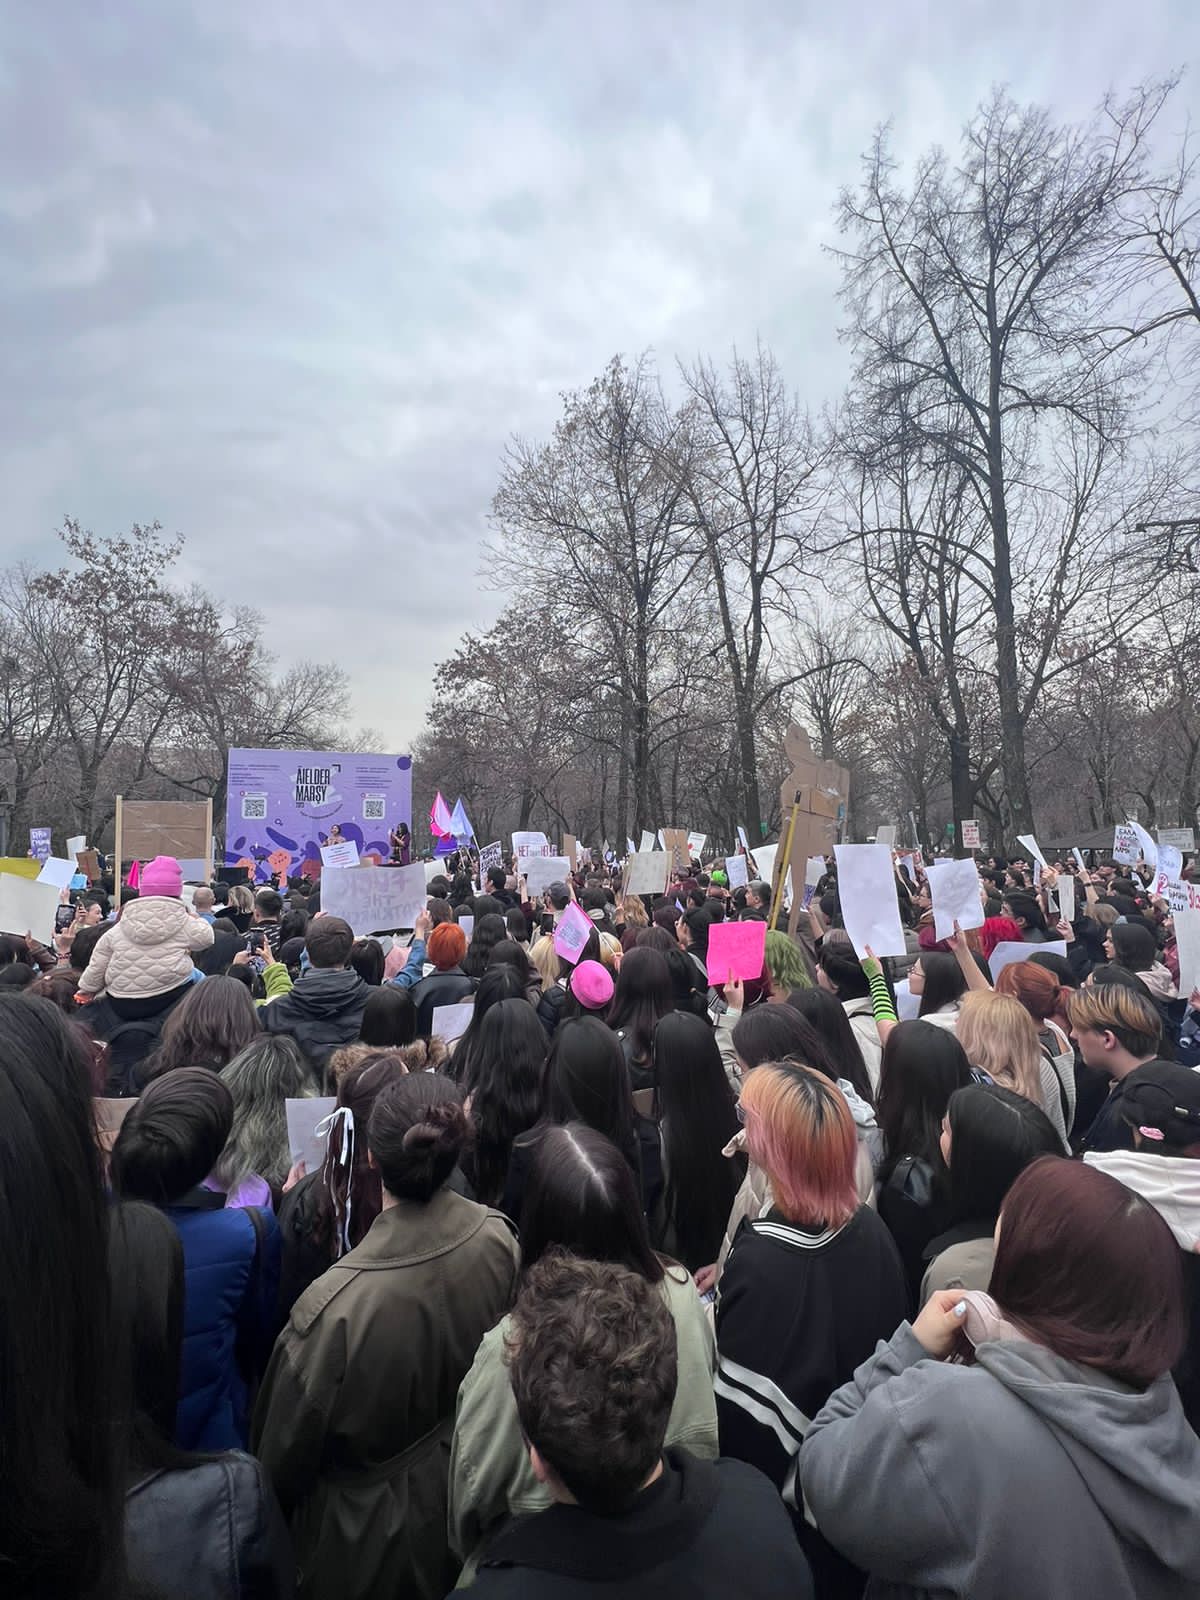 "Боюсь стать следующей": как прошел митинг  за права женщин в Алматы 8 марта?